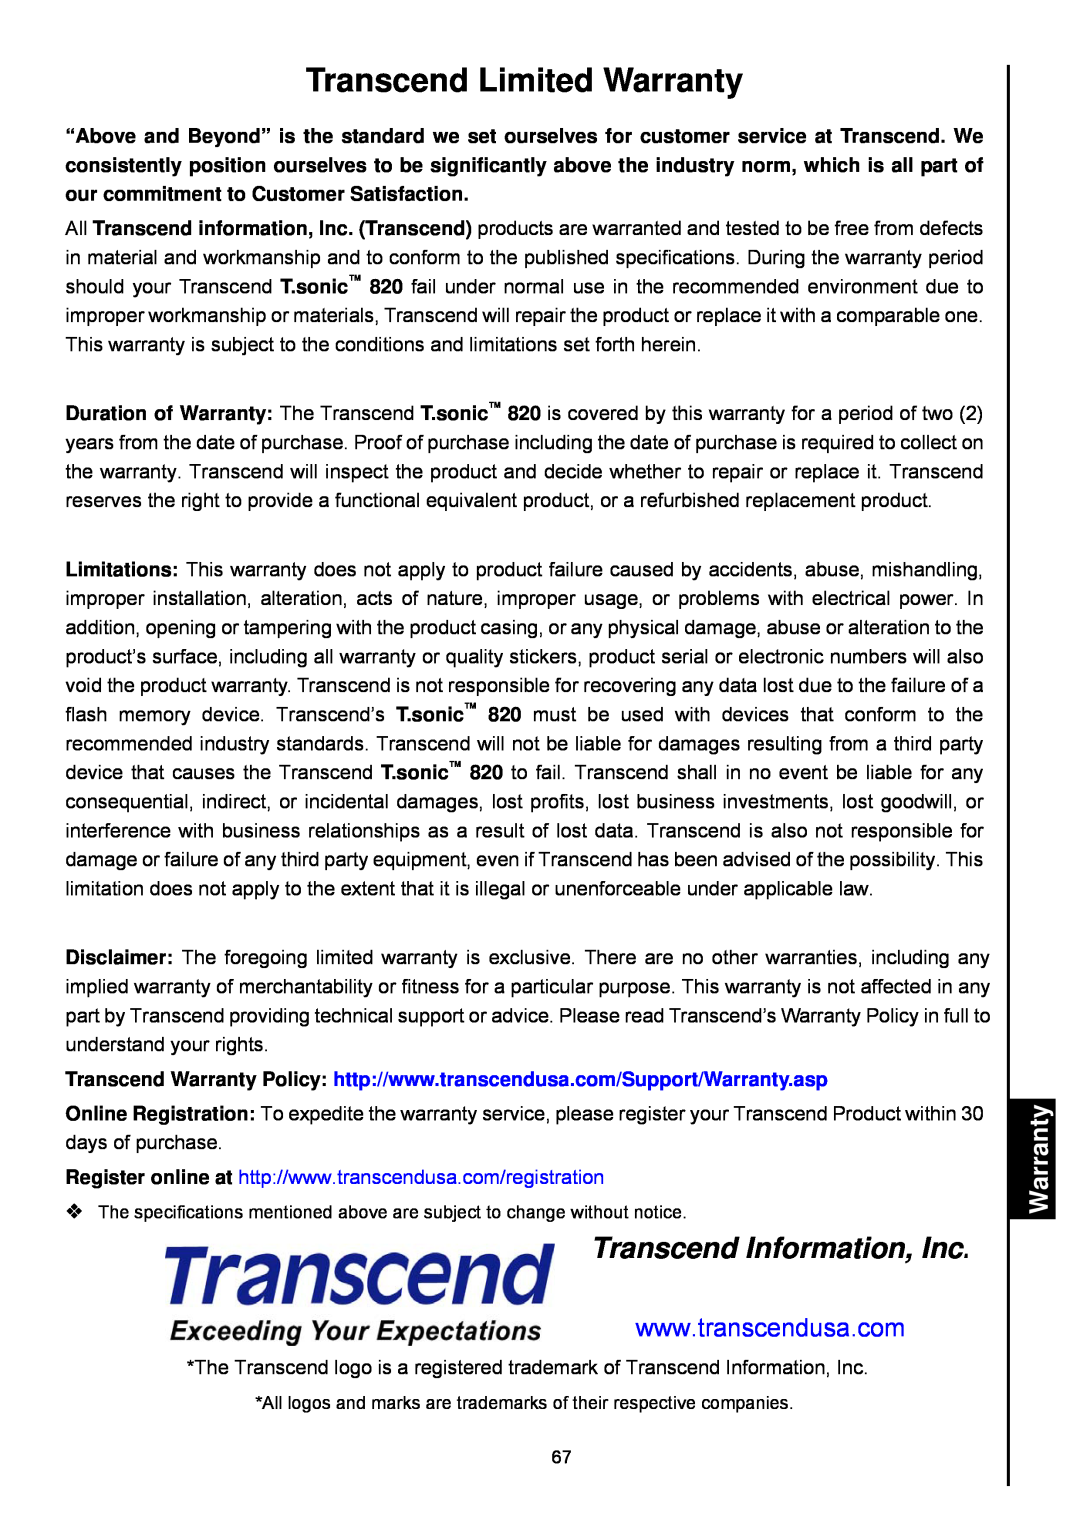 Transcend Information 820 user manual Transcend Limited Warranty, Transcend Information, Inc 